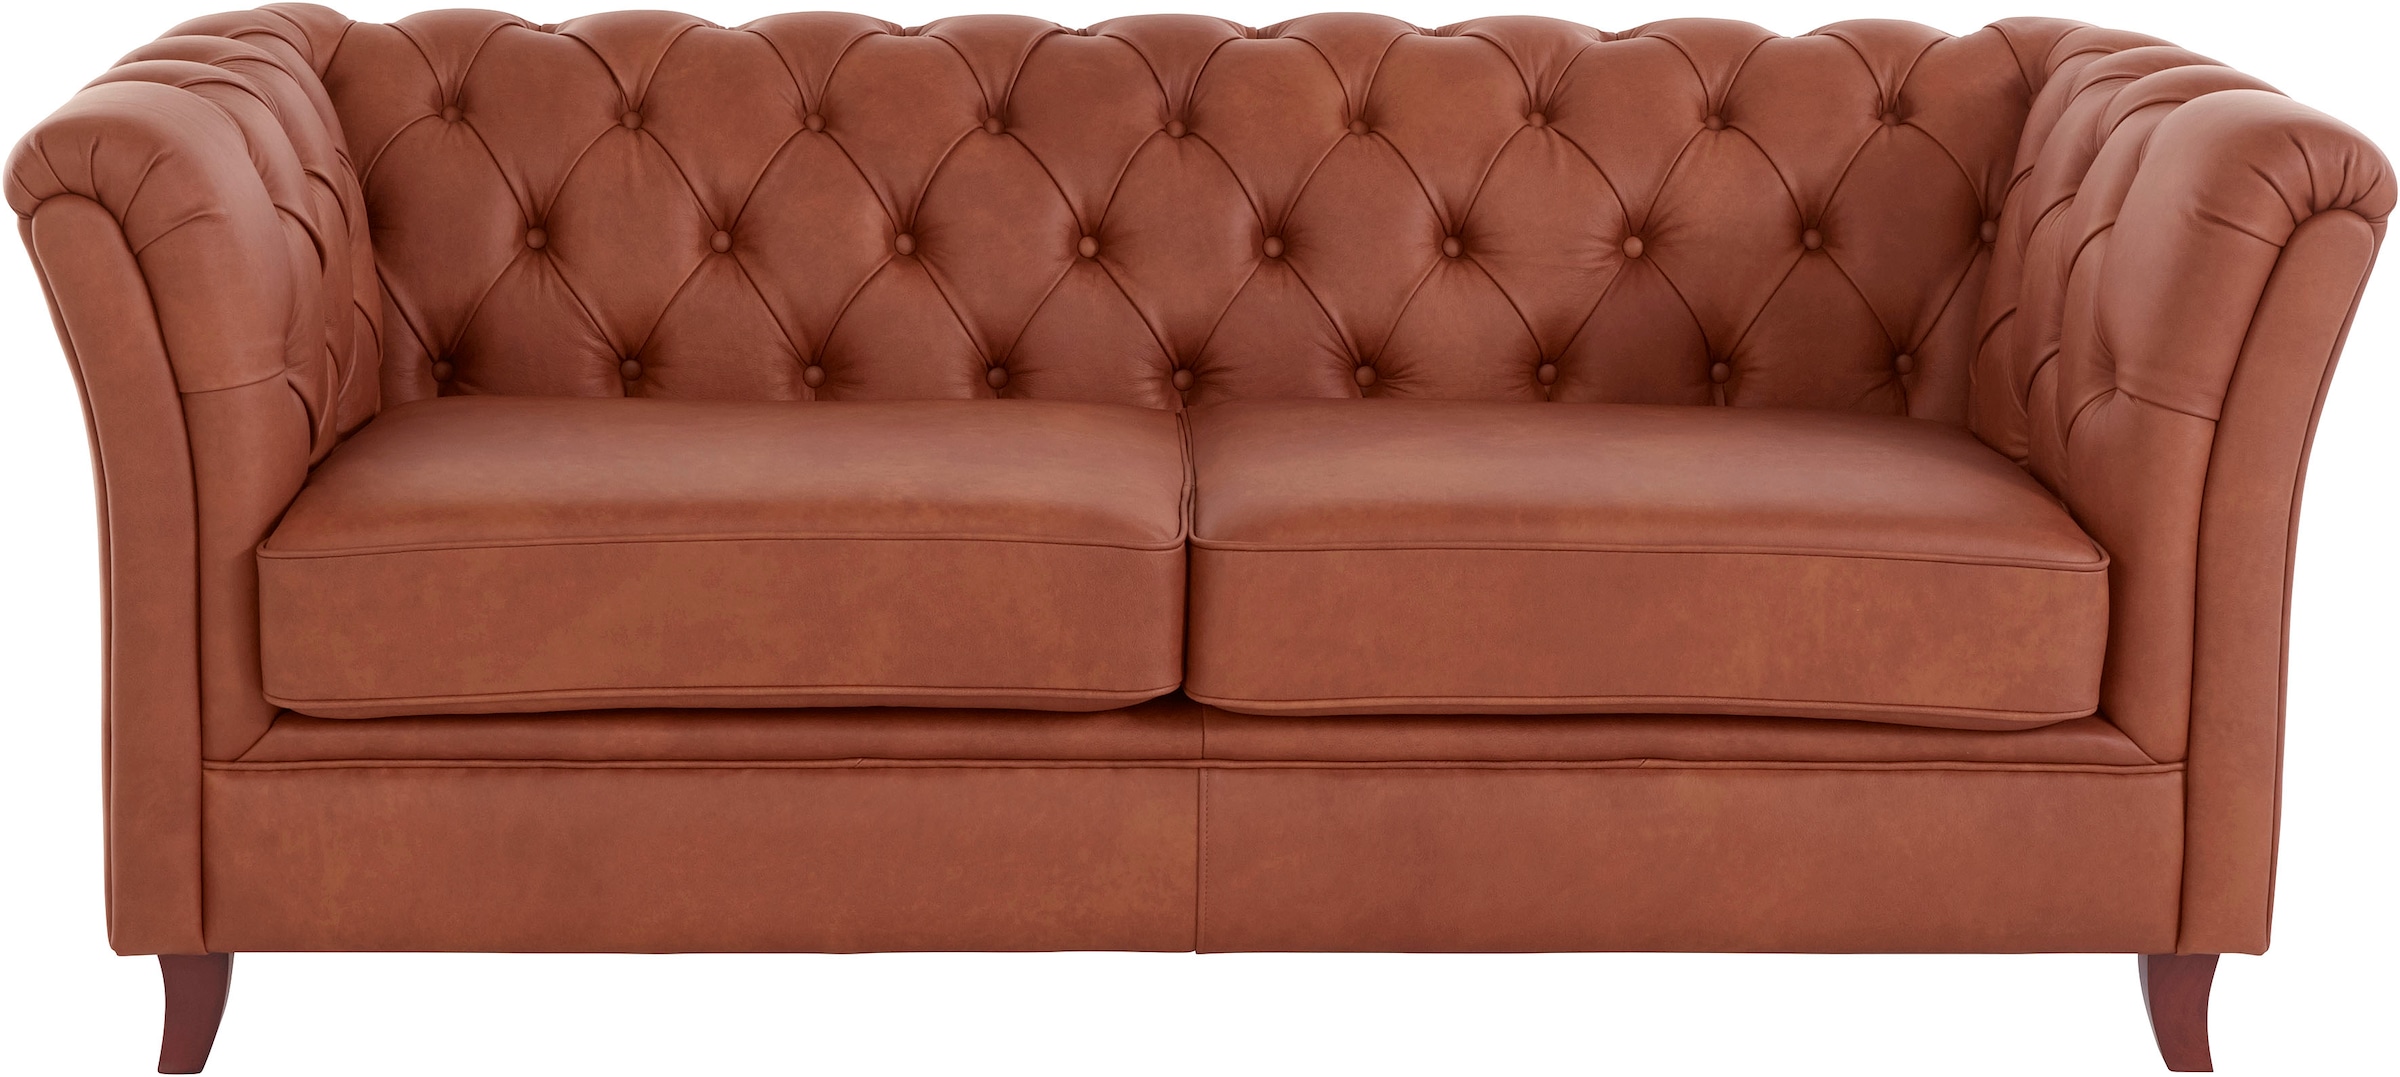 Chesterfield-Sofa »Reims«, mit echter Chesterfield-Knopfheftung, hochwertige Verarbeitung